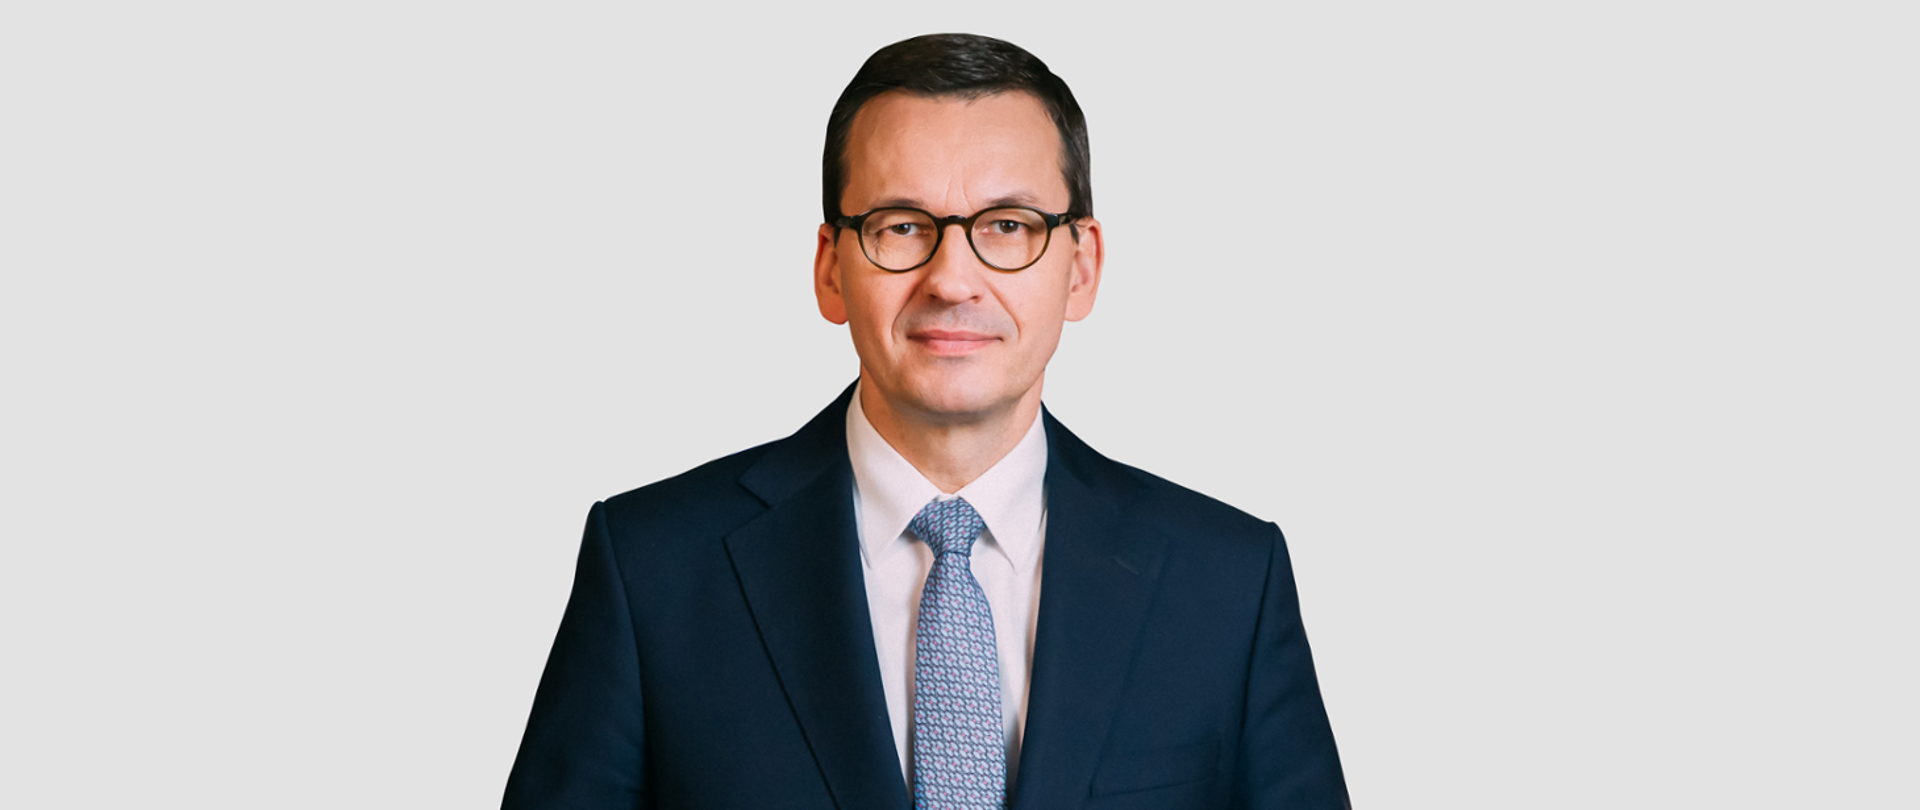 Zdjęcie przedstawia Premiera RP Mateusza Morawieckiego na białym tle.